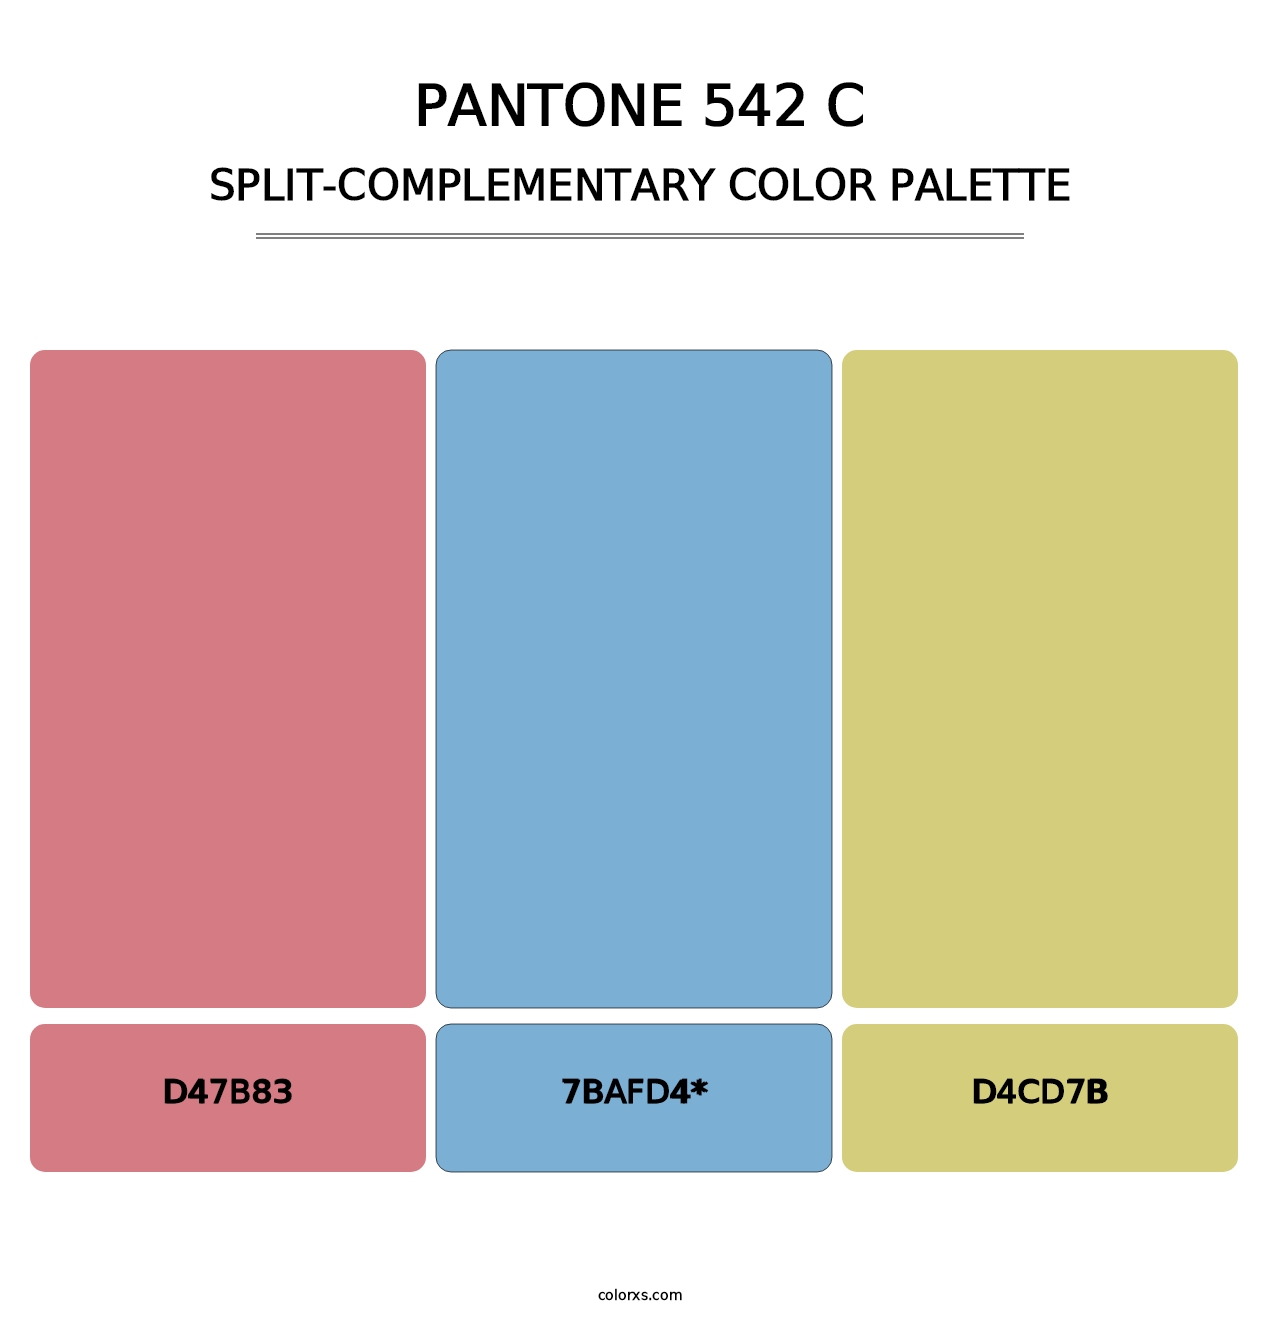 PANTONE 542 C - Split-Complementary Color Palette